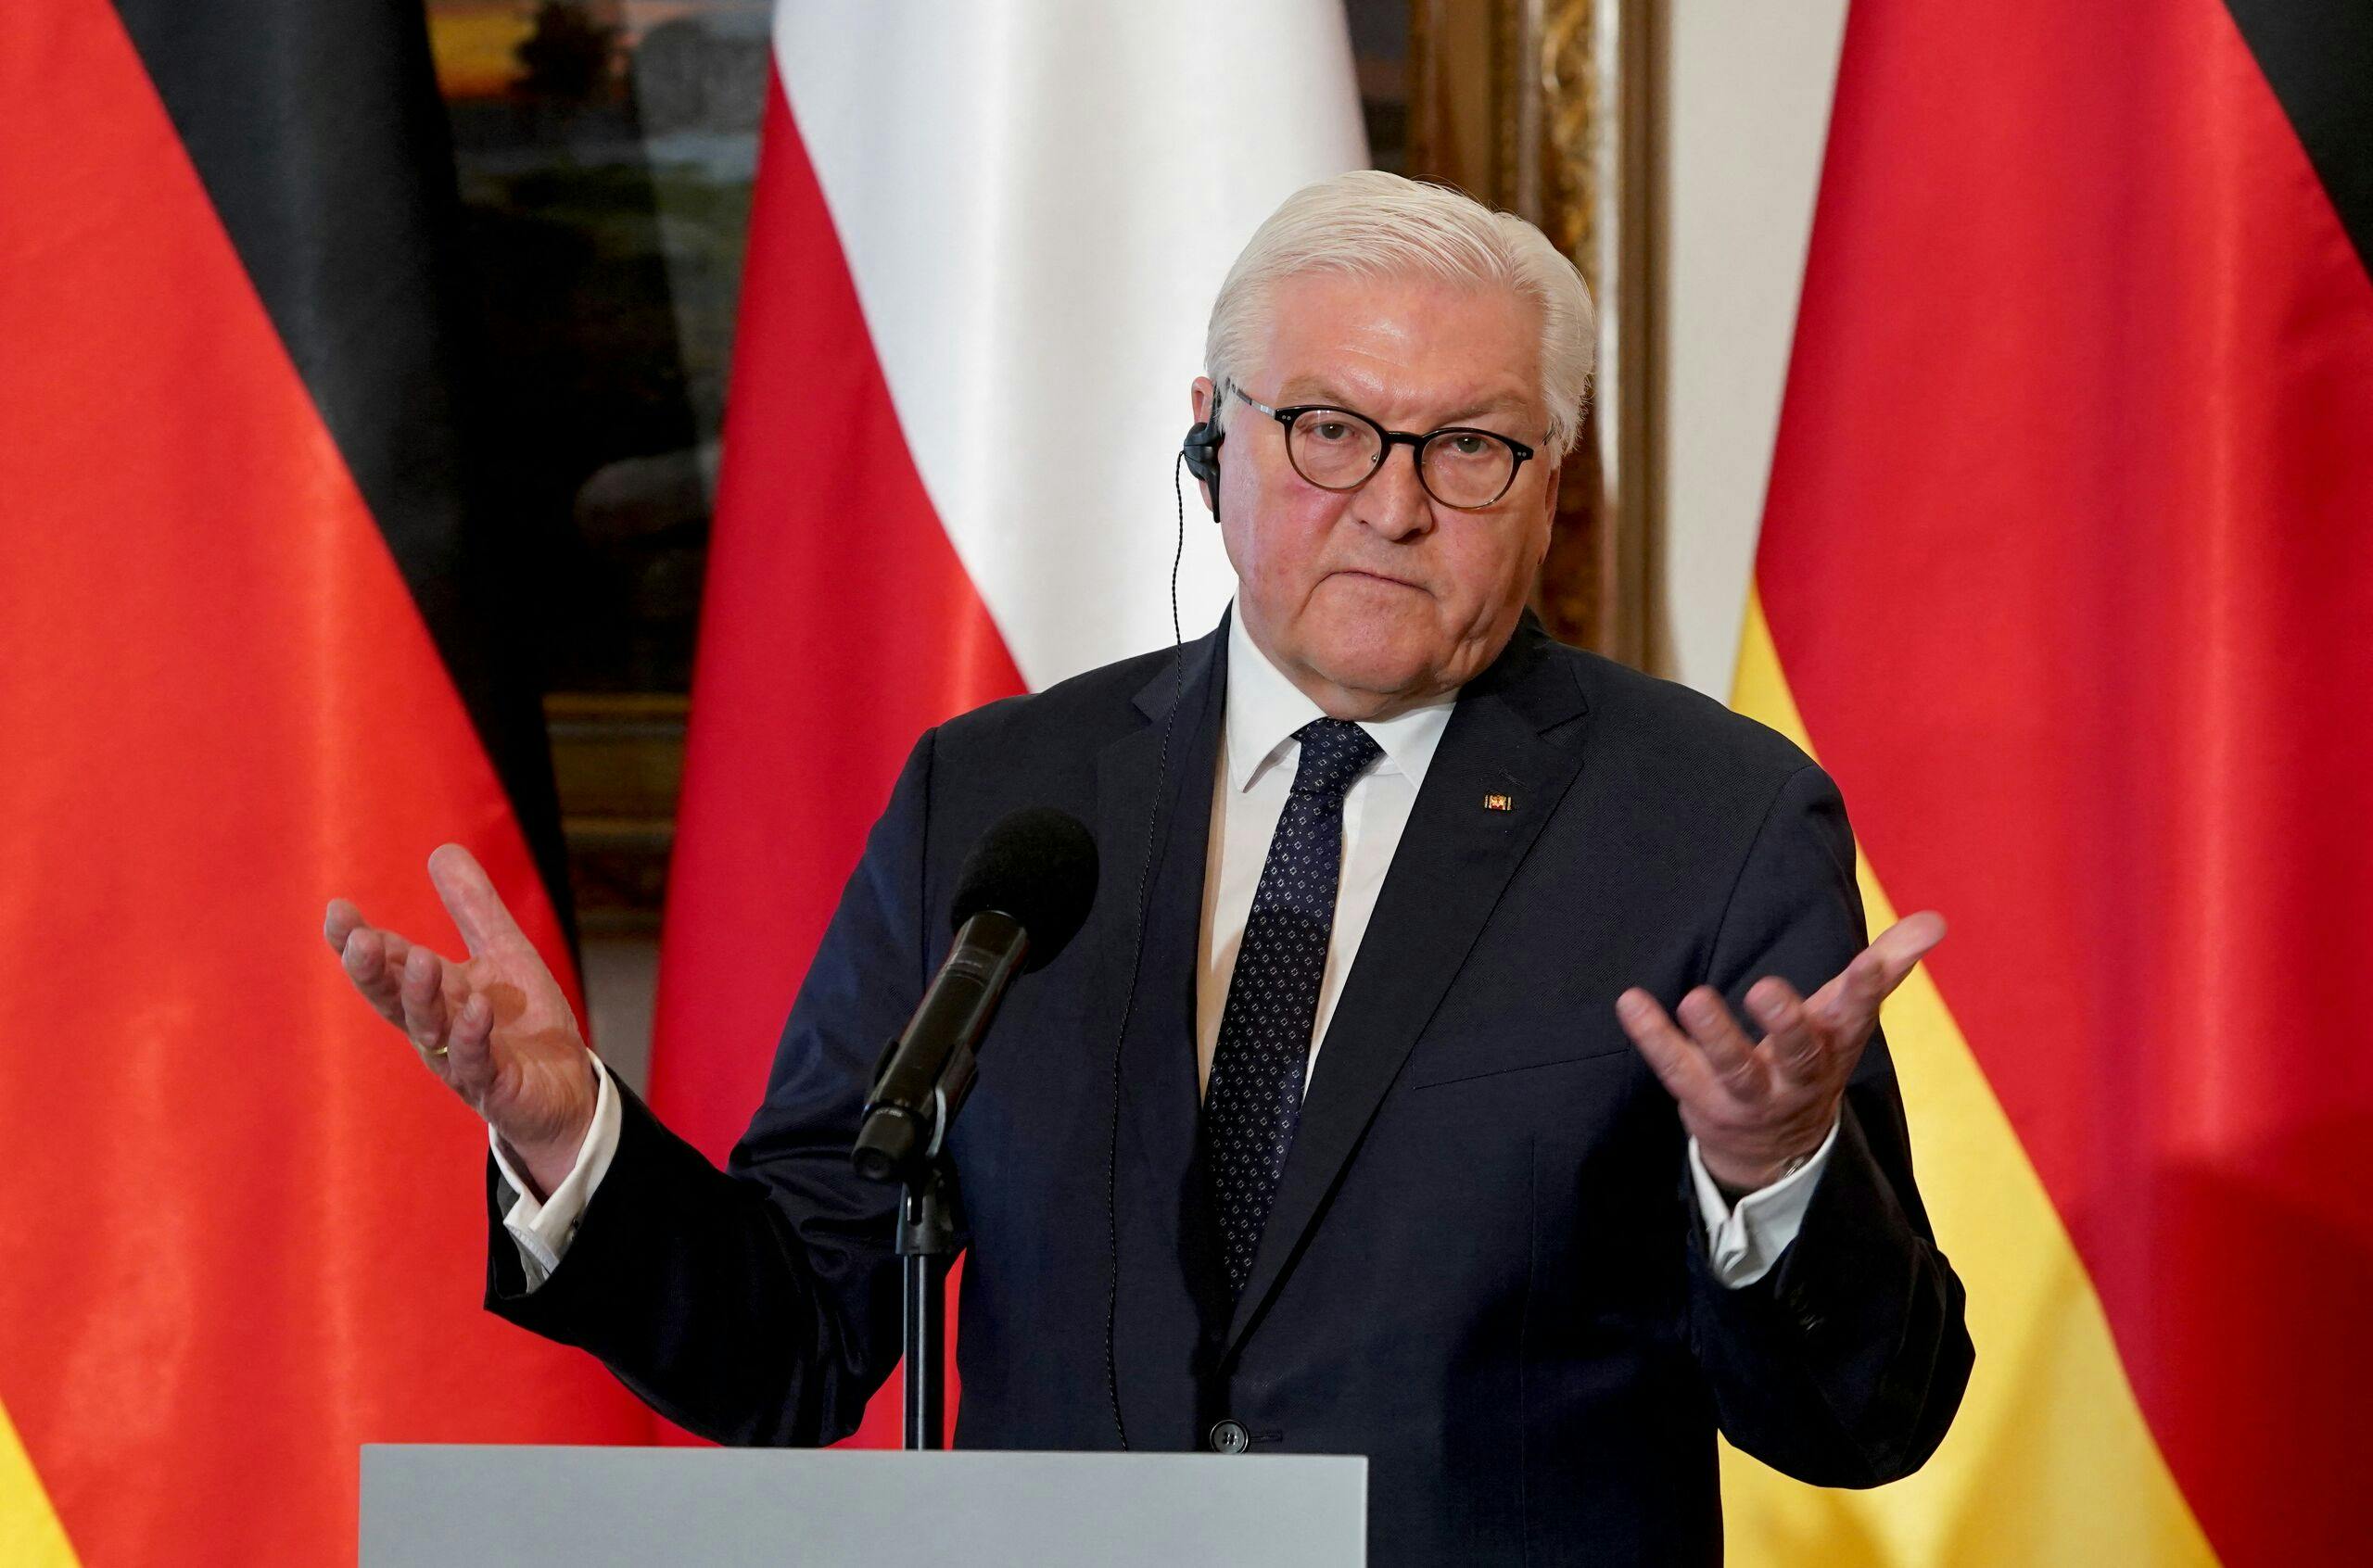 Deutscher Präsident in der Ukraine nicht willkommen